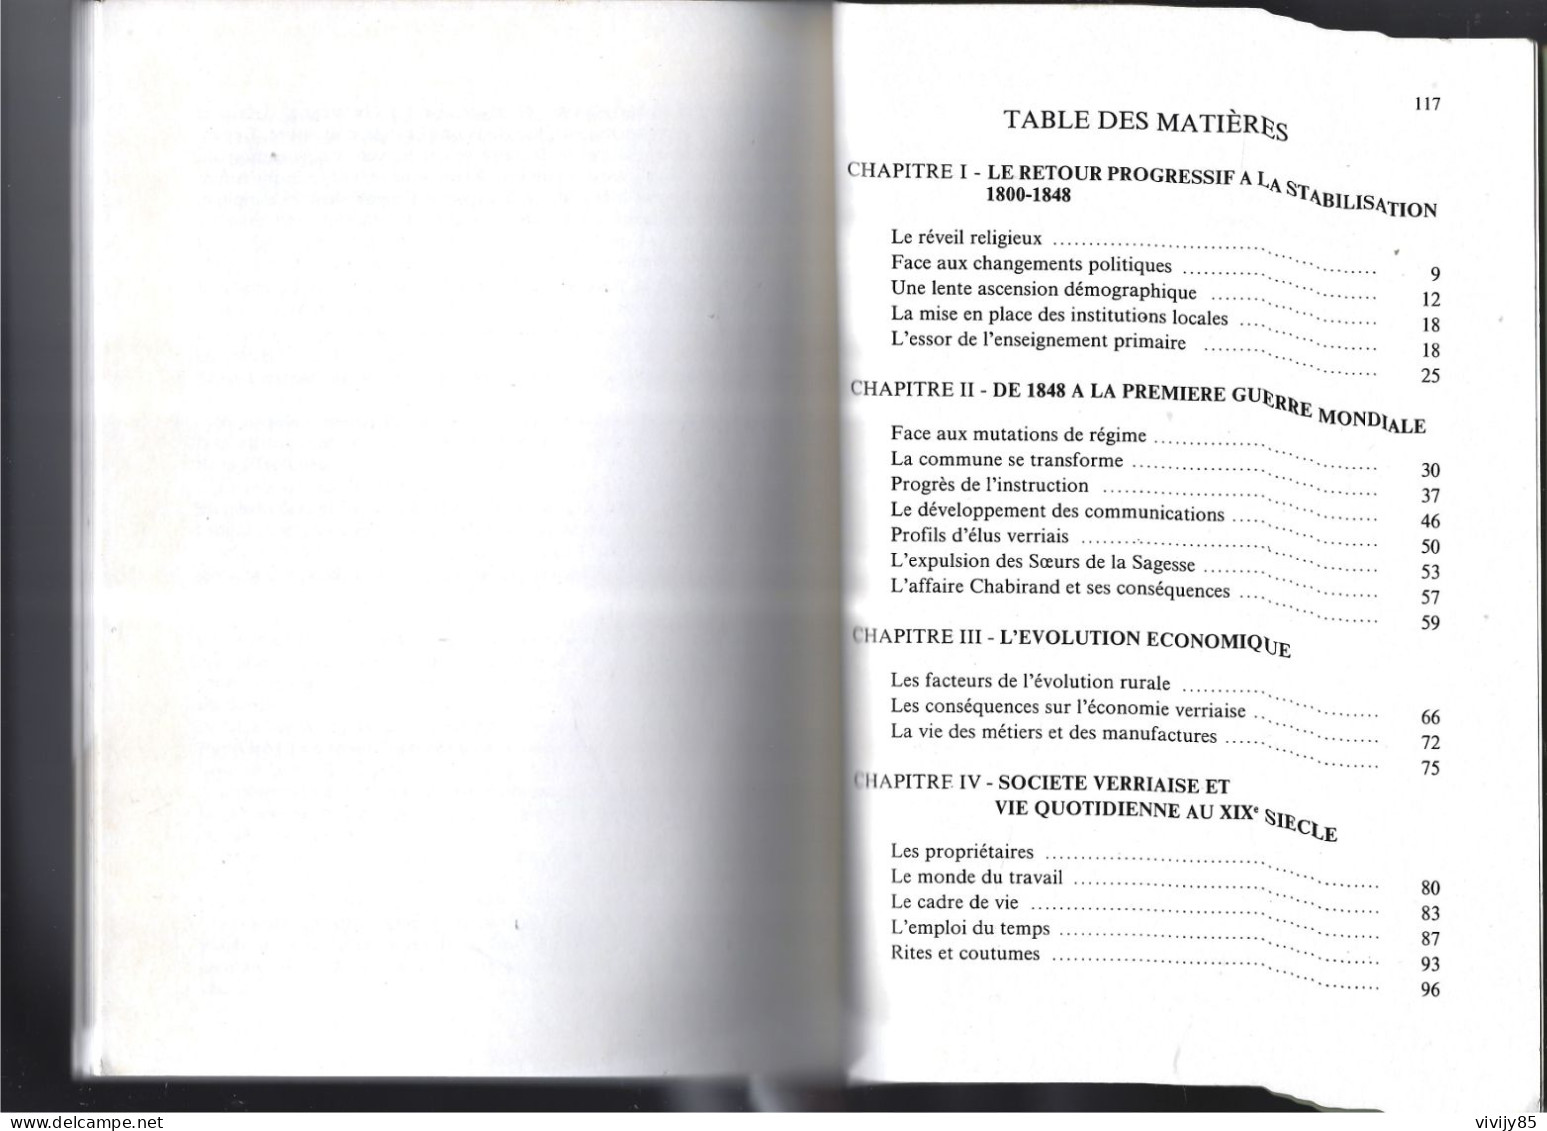 85 - LA VERRIE -Beau livre peu courant de 118 pages " Bourg vendéen de 1800 à 1914 " - fascicule II